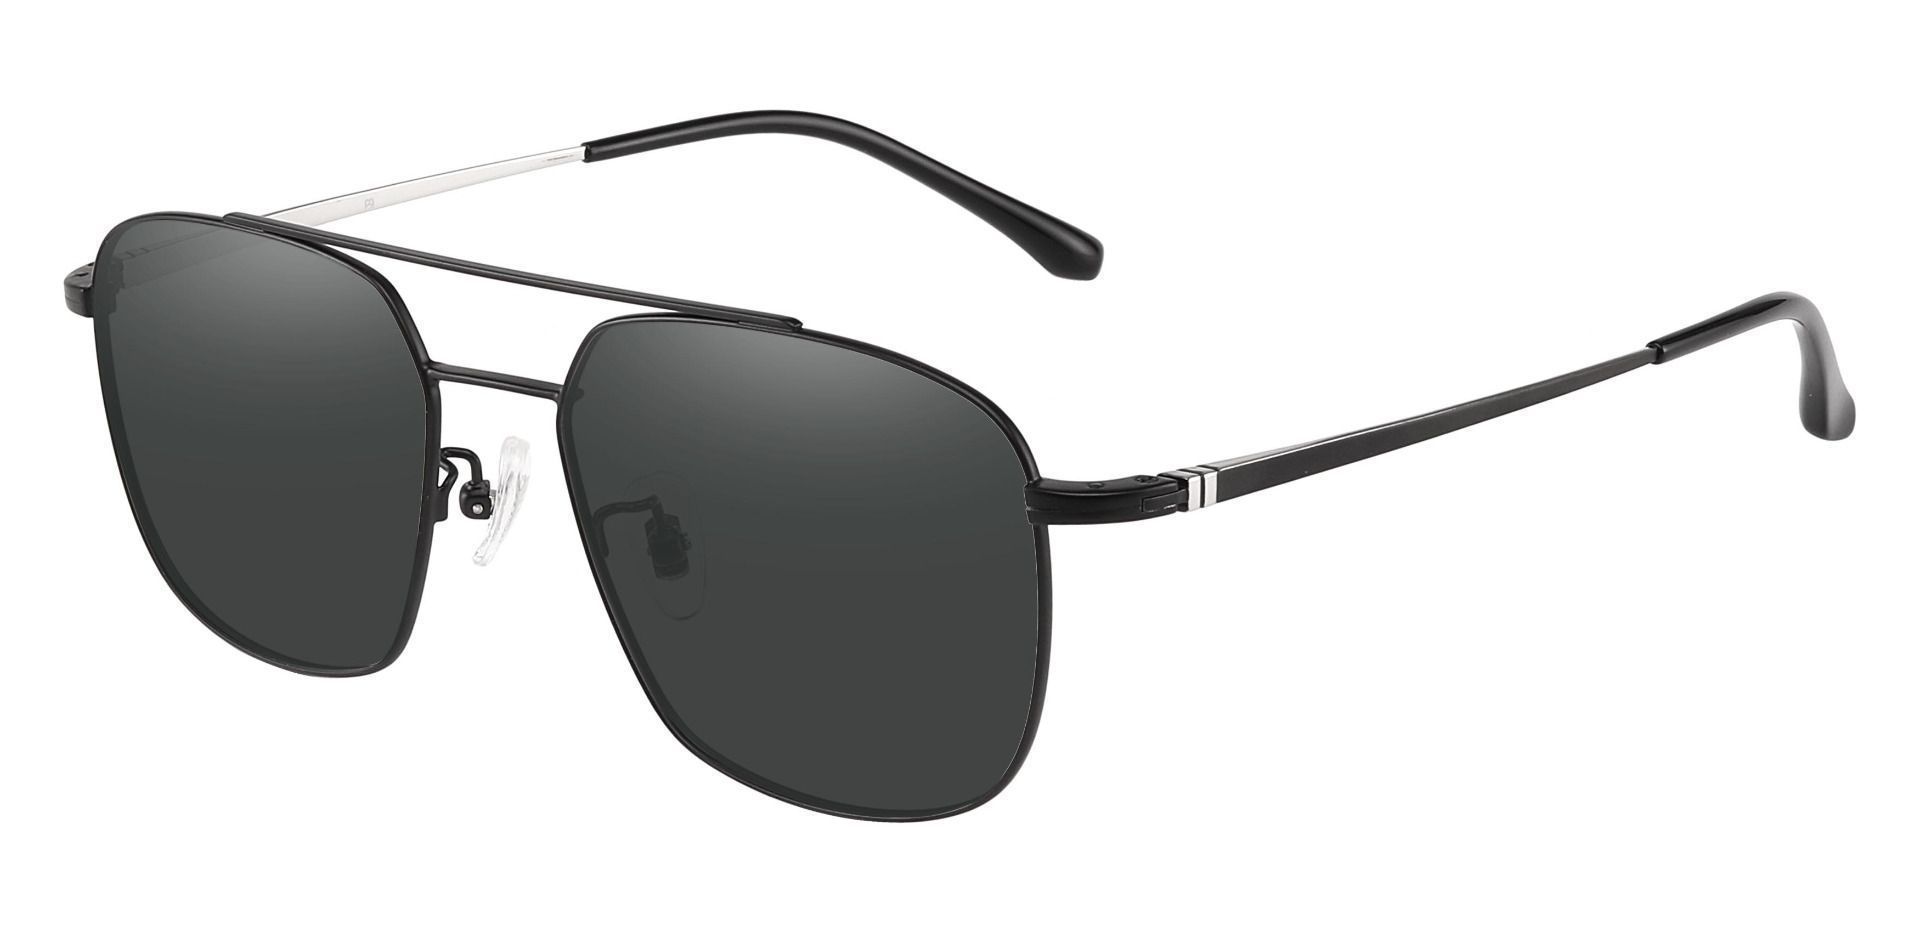 Trevor Aviator Progressive Sunglasses - Black Frame With Gray Lenses